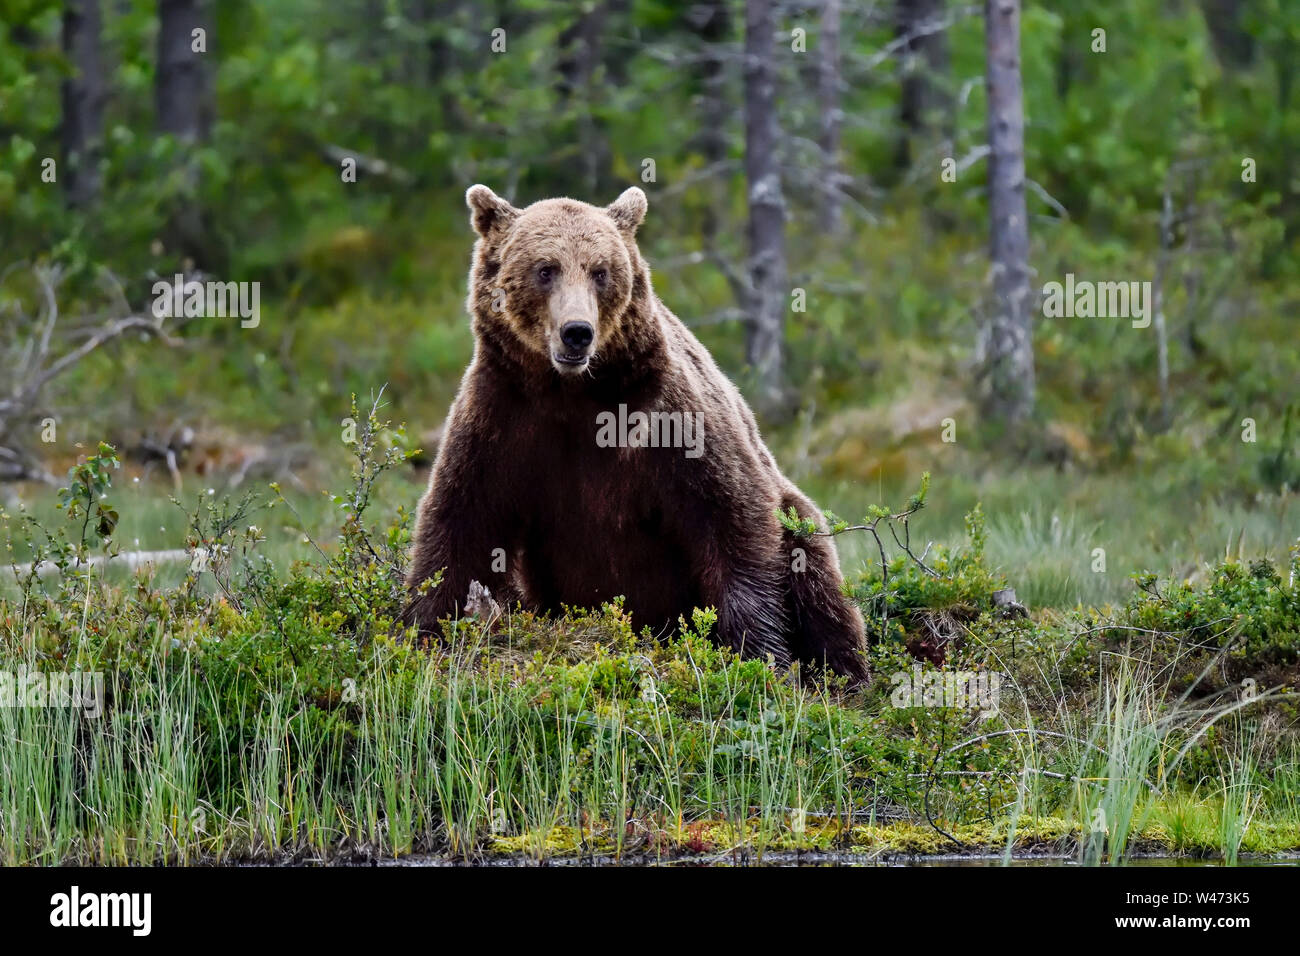 'Sitting Bull'. L'ours brun, c'est la fin de nuit et il est temps de prendre une pause et de processus. Banque D'Images